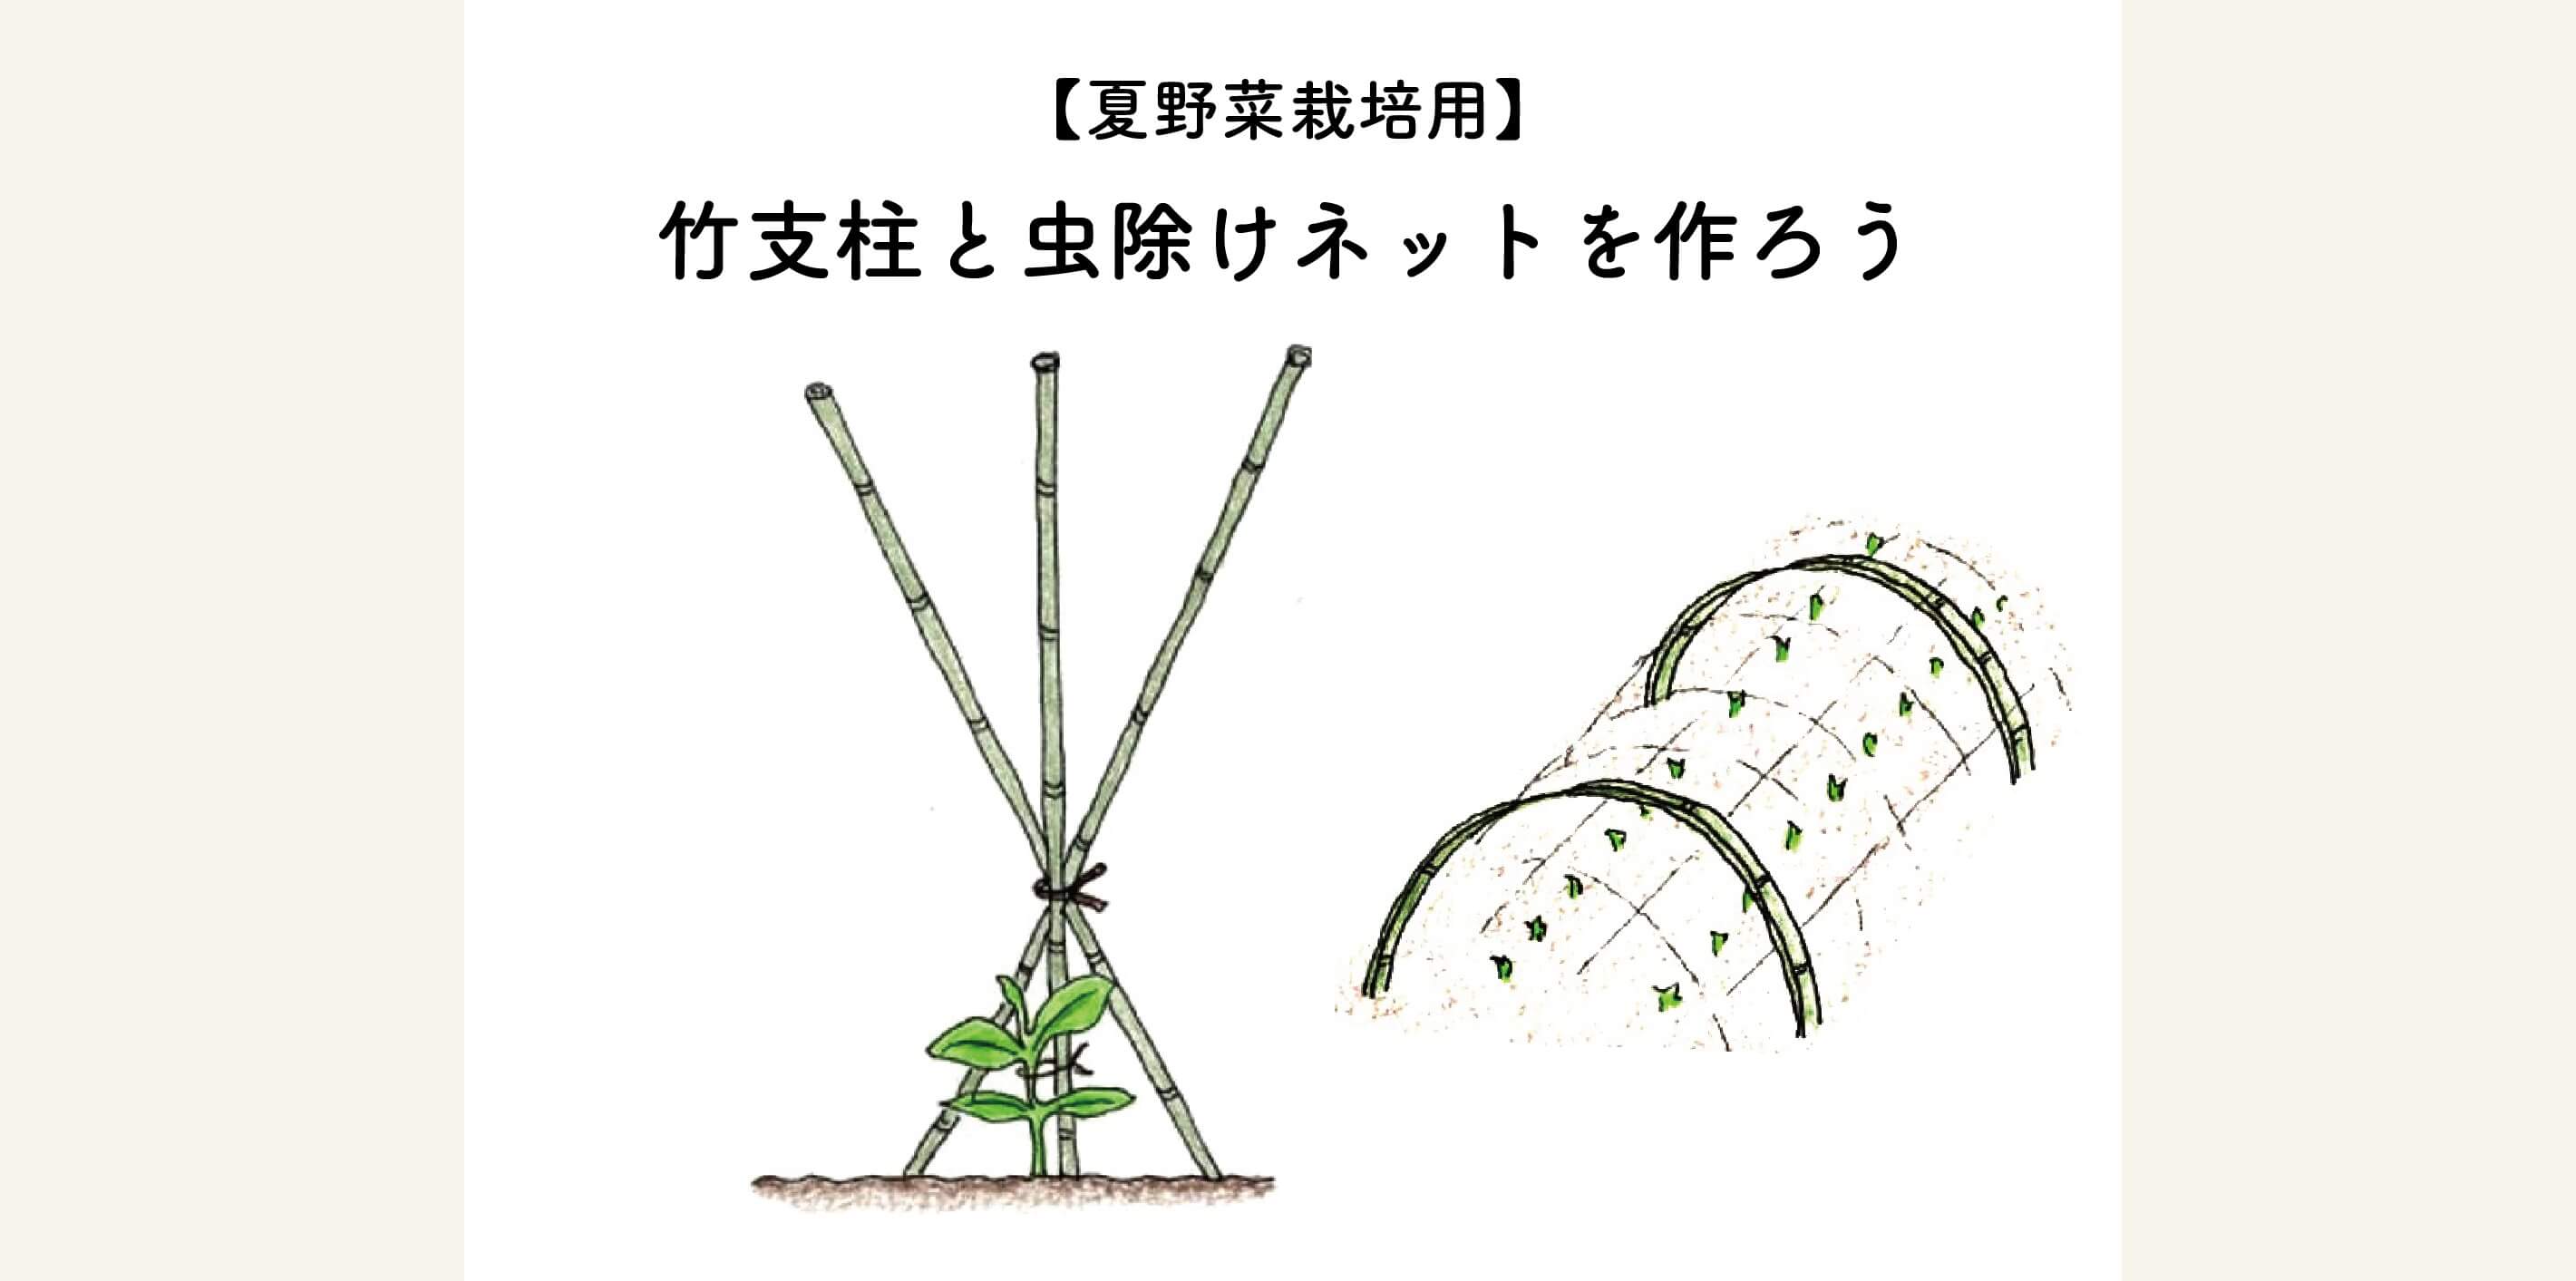 見た目も綺麗で美しい 夏野菜栽培用の竹支柱と虫よけネットをつくろう 切るを楽しむ アルスコーポレーション株式会社